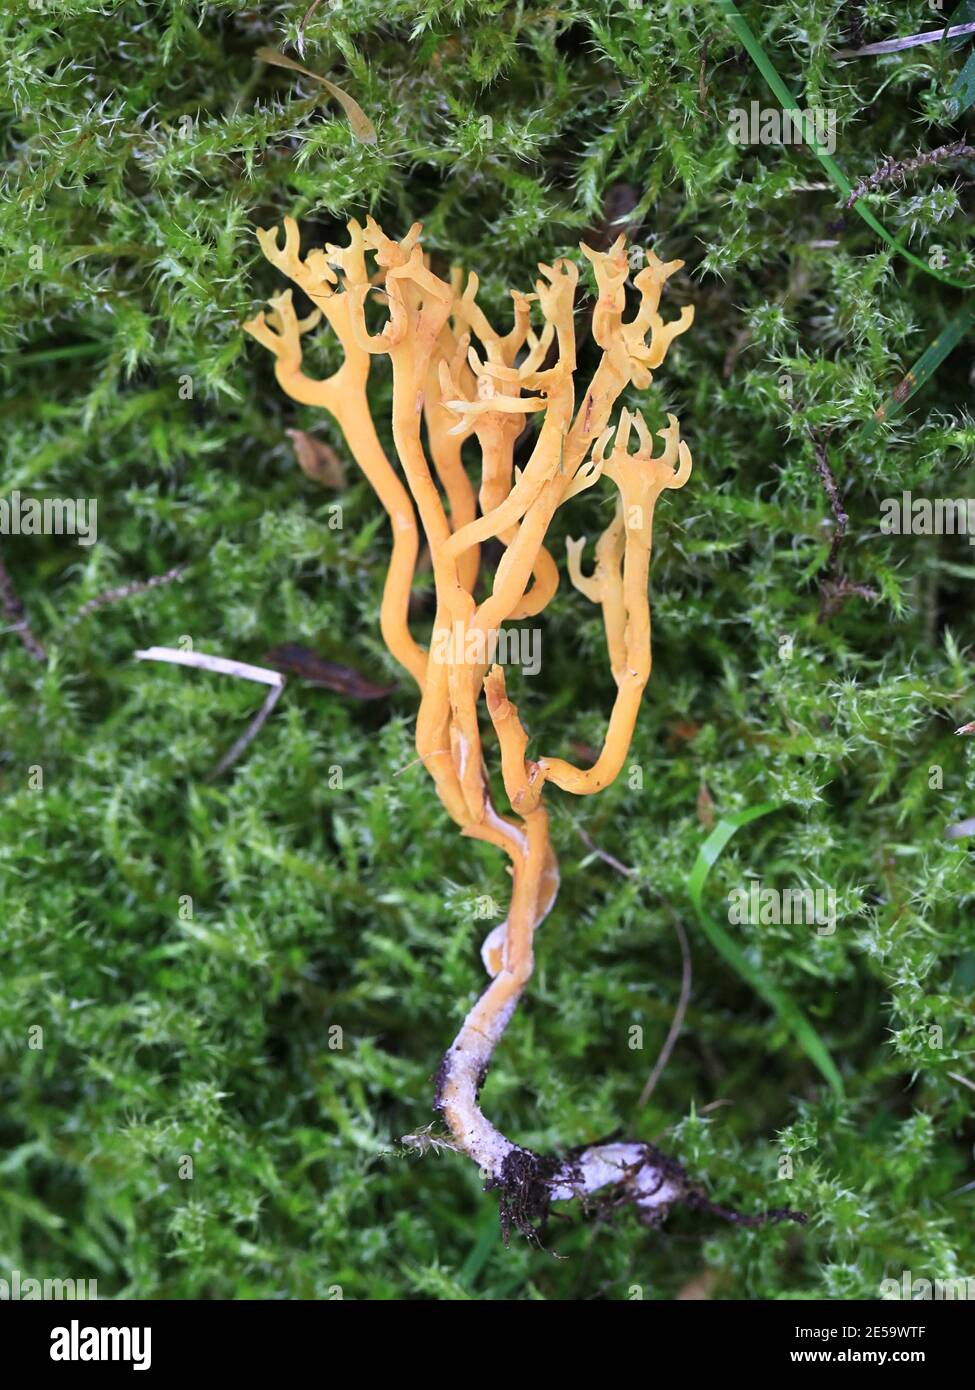 Clavulinopsis corniculata, connu sous le nom de champignon de corail de Meadow, champignon sauvage de Finlande Banque D'Images